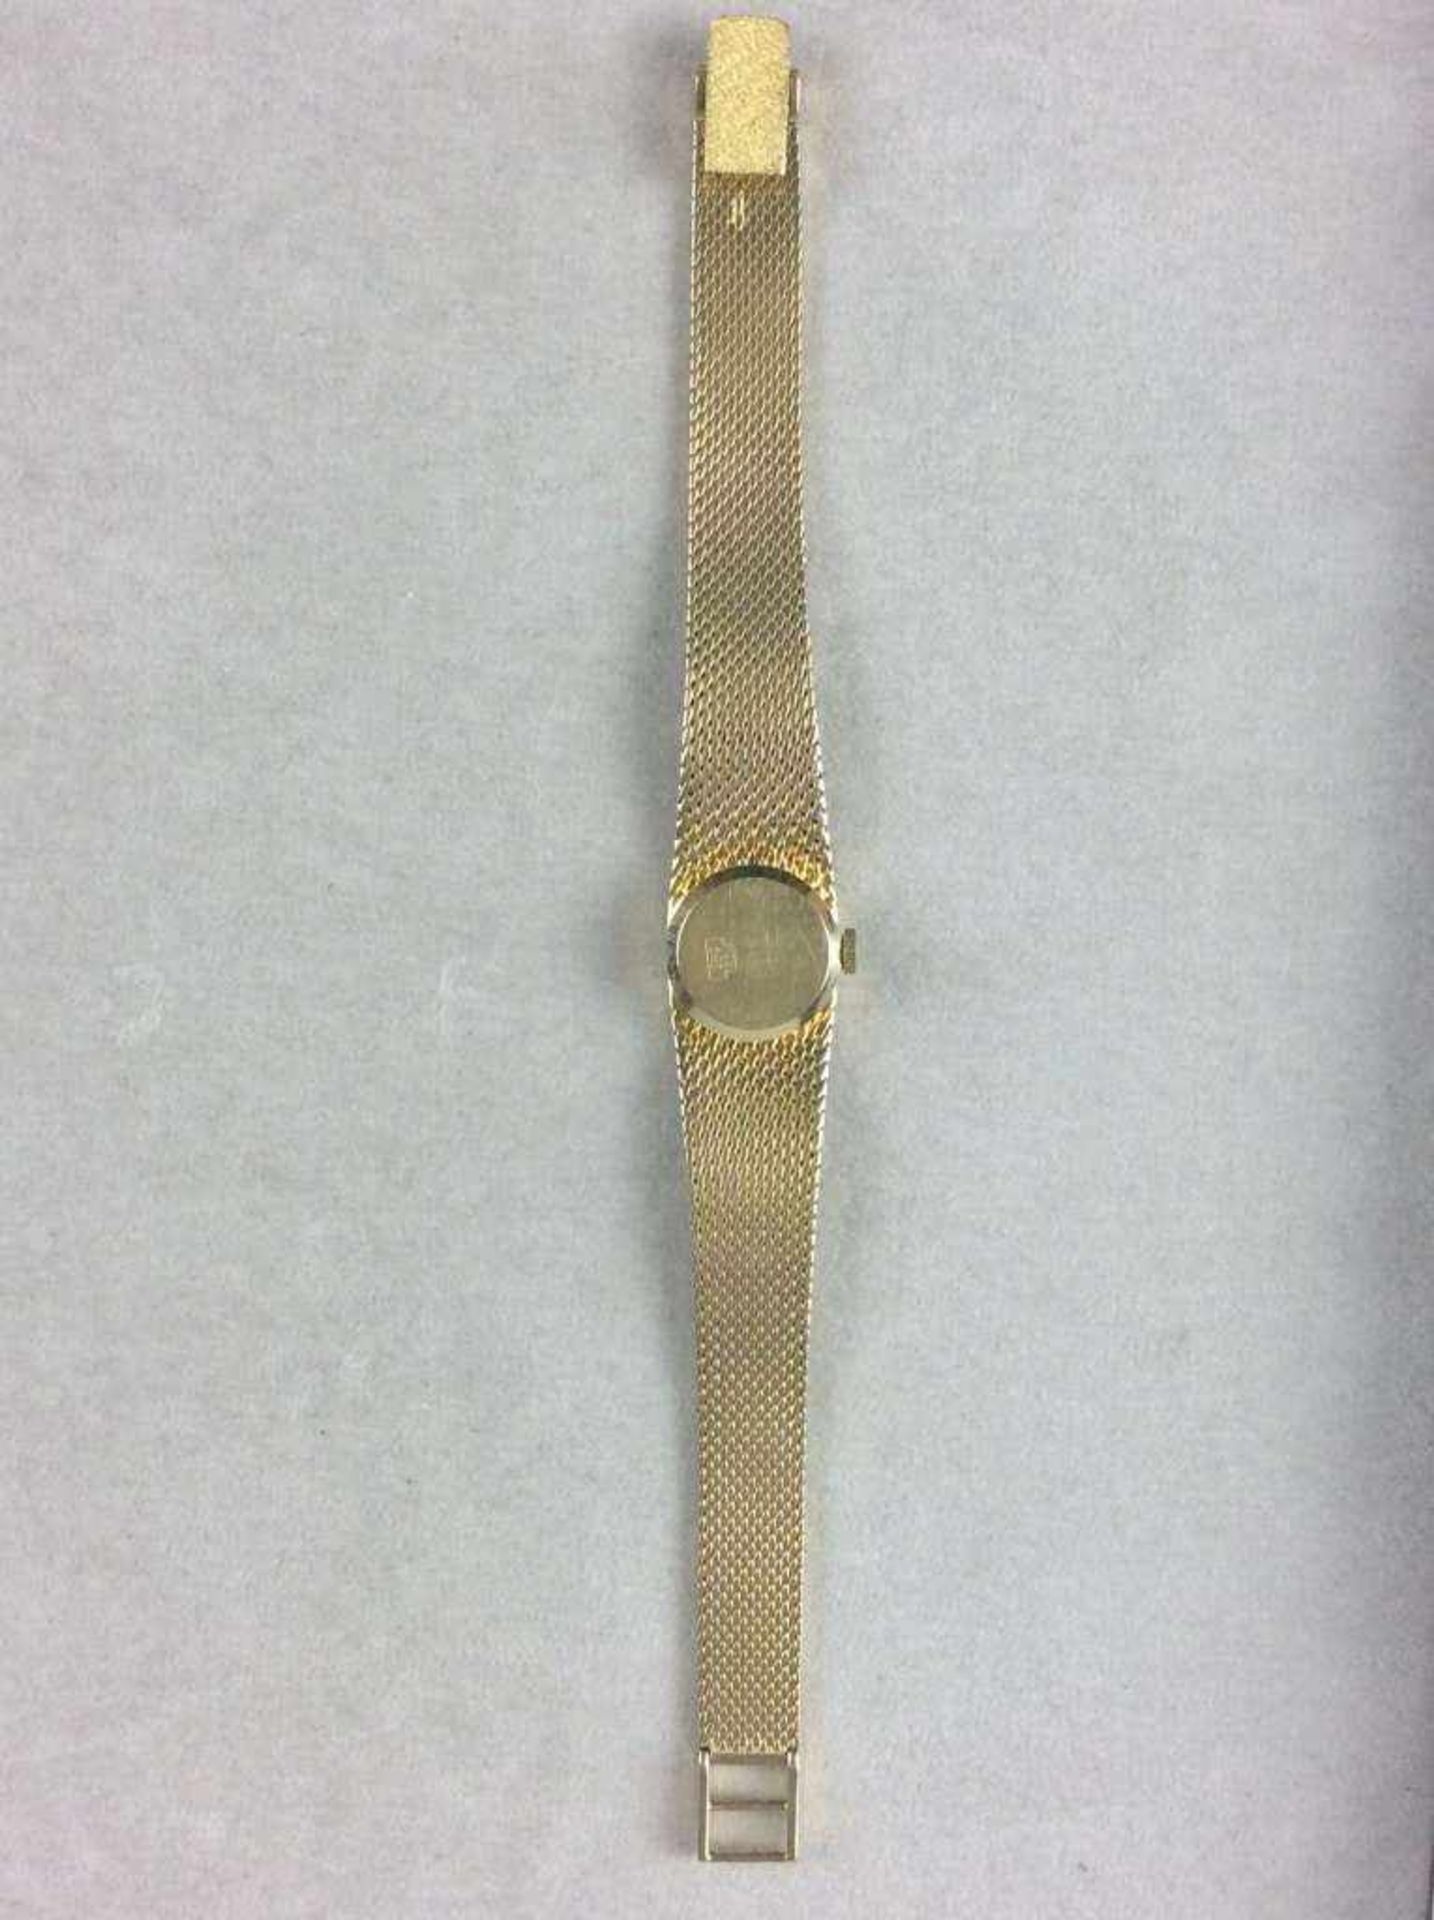 Arctos Damenarmbanduhr aus 585er-Gelbgold, rundes Zifferblatt, mechanisches Uhrwerk/Handaufzug. - Bild 3 aus 3